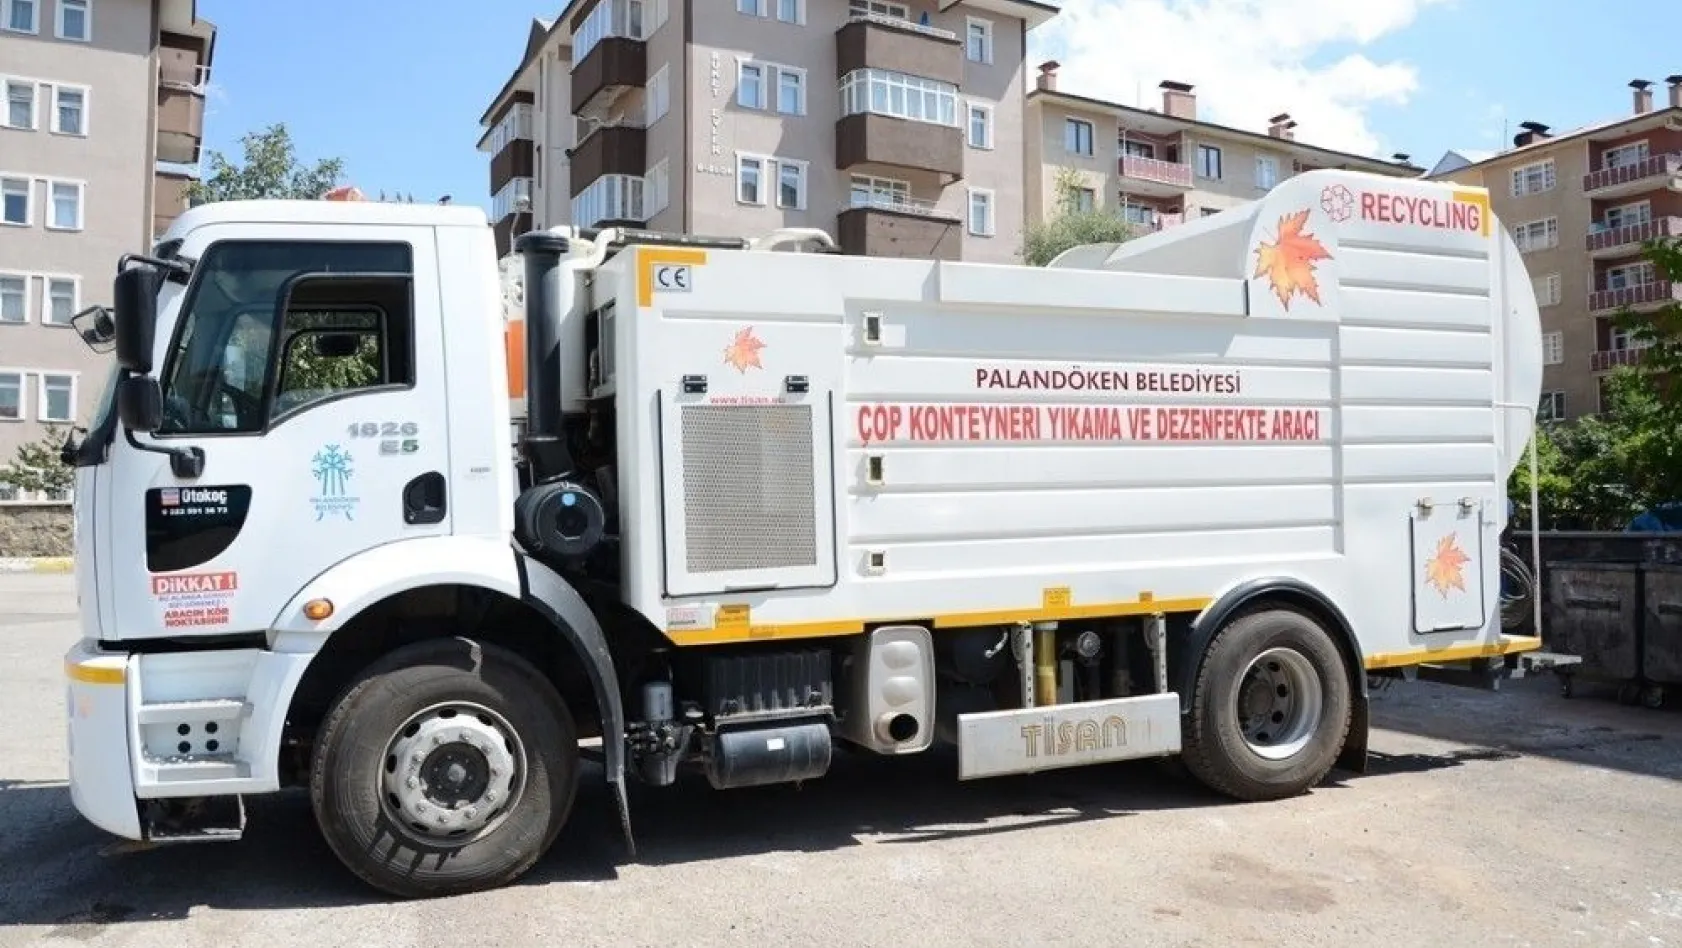 Palandöken Belediyesi, çöp konteyneri yıkama ve dezenfekte aracını hizmete soktu
